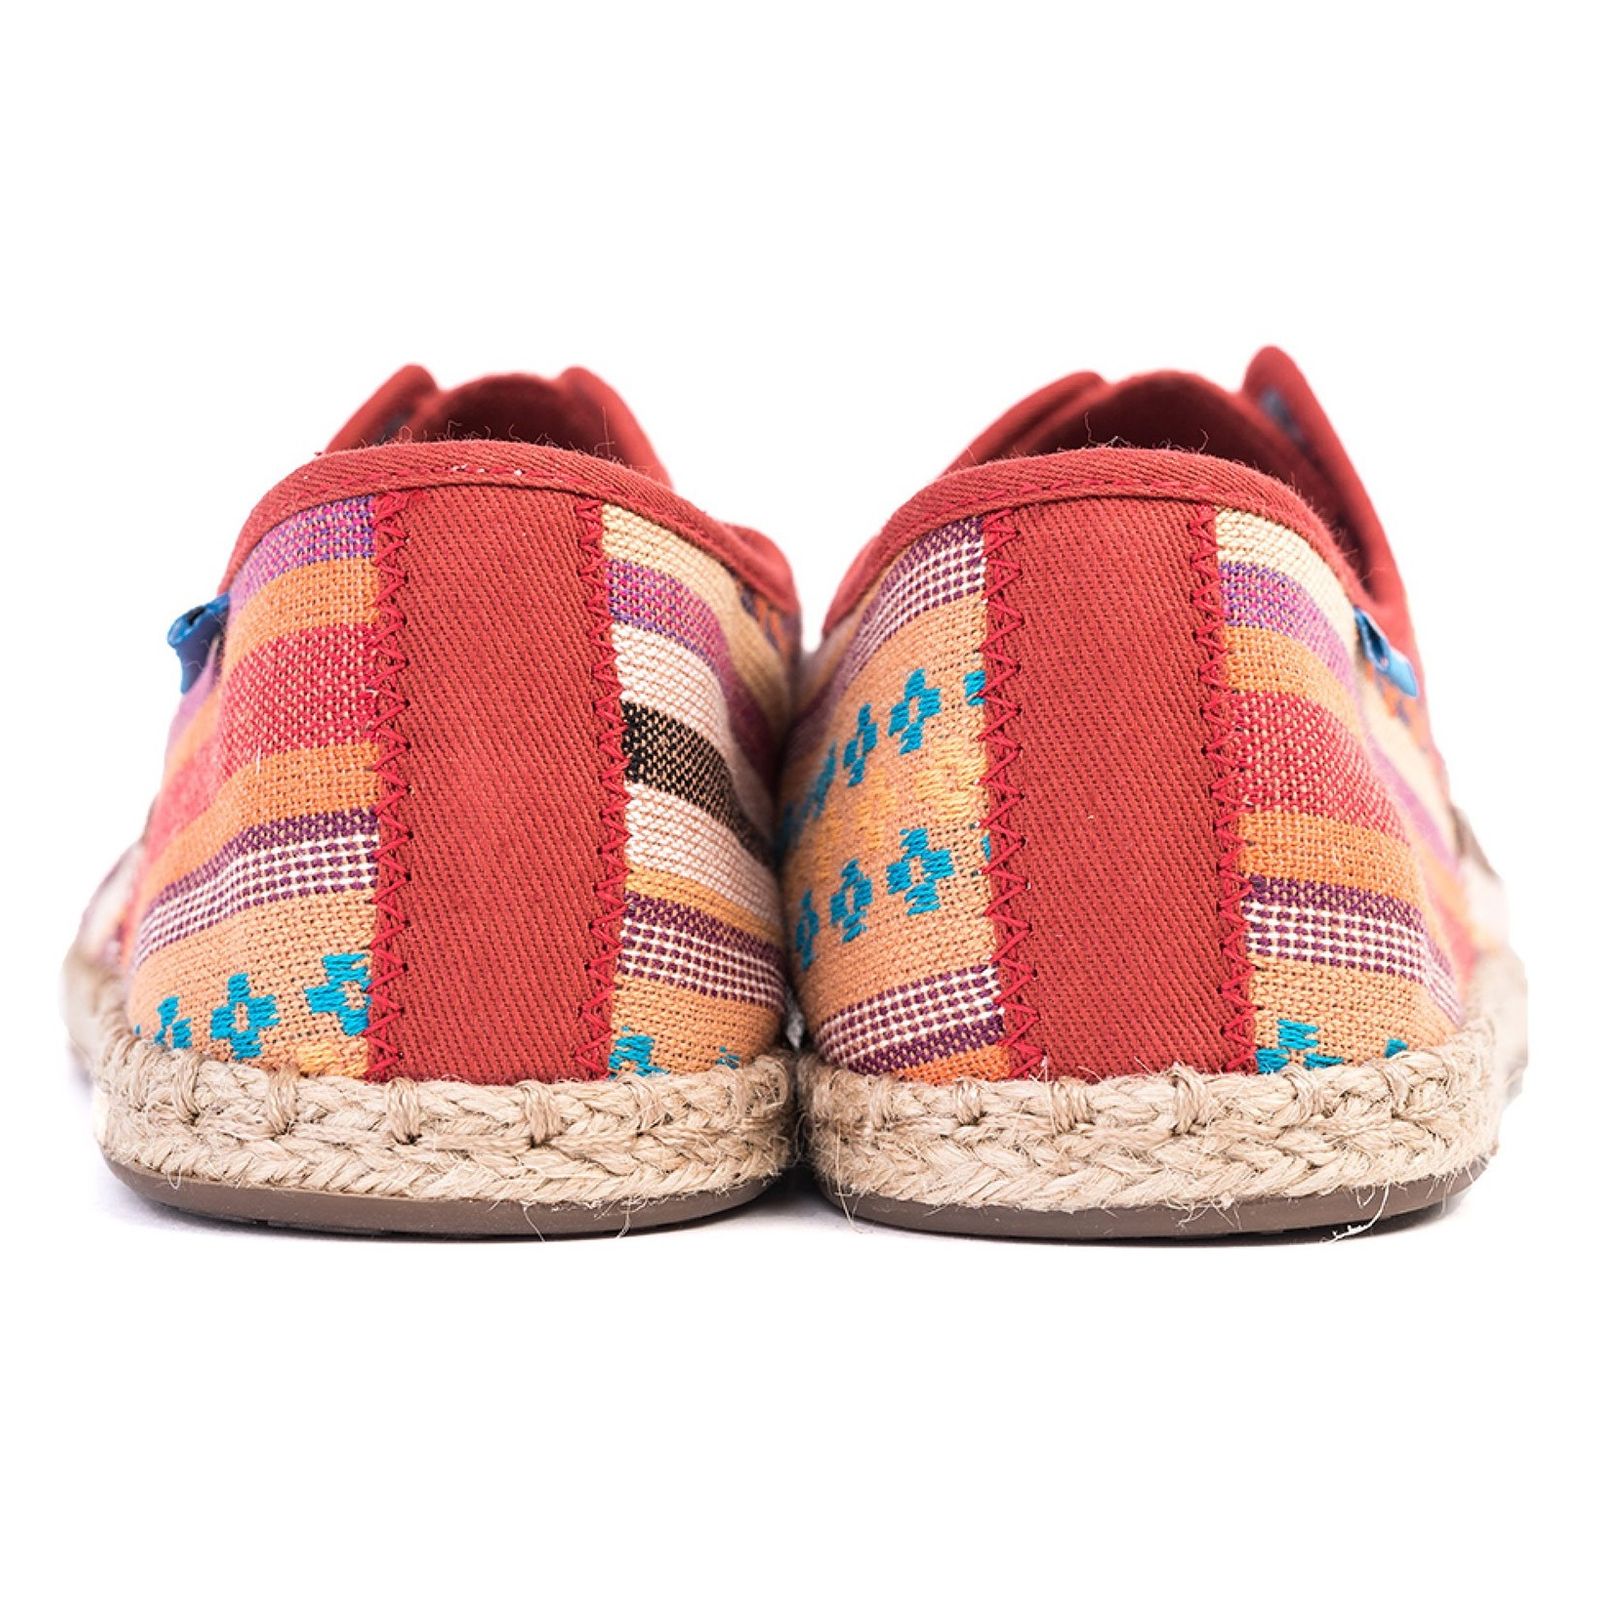 کفش تخت نخی زنانه - تامز - راه راه رنگي طرح منطقه کاين - 6